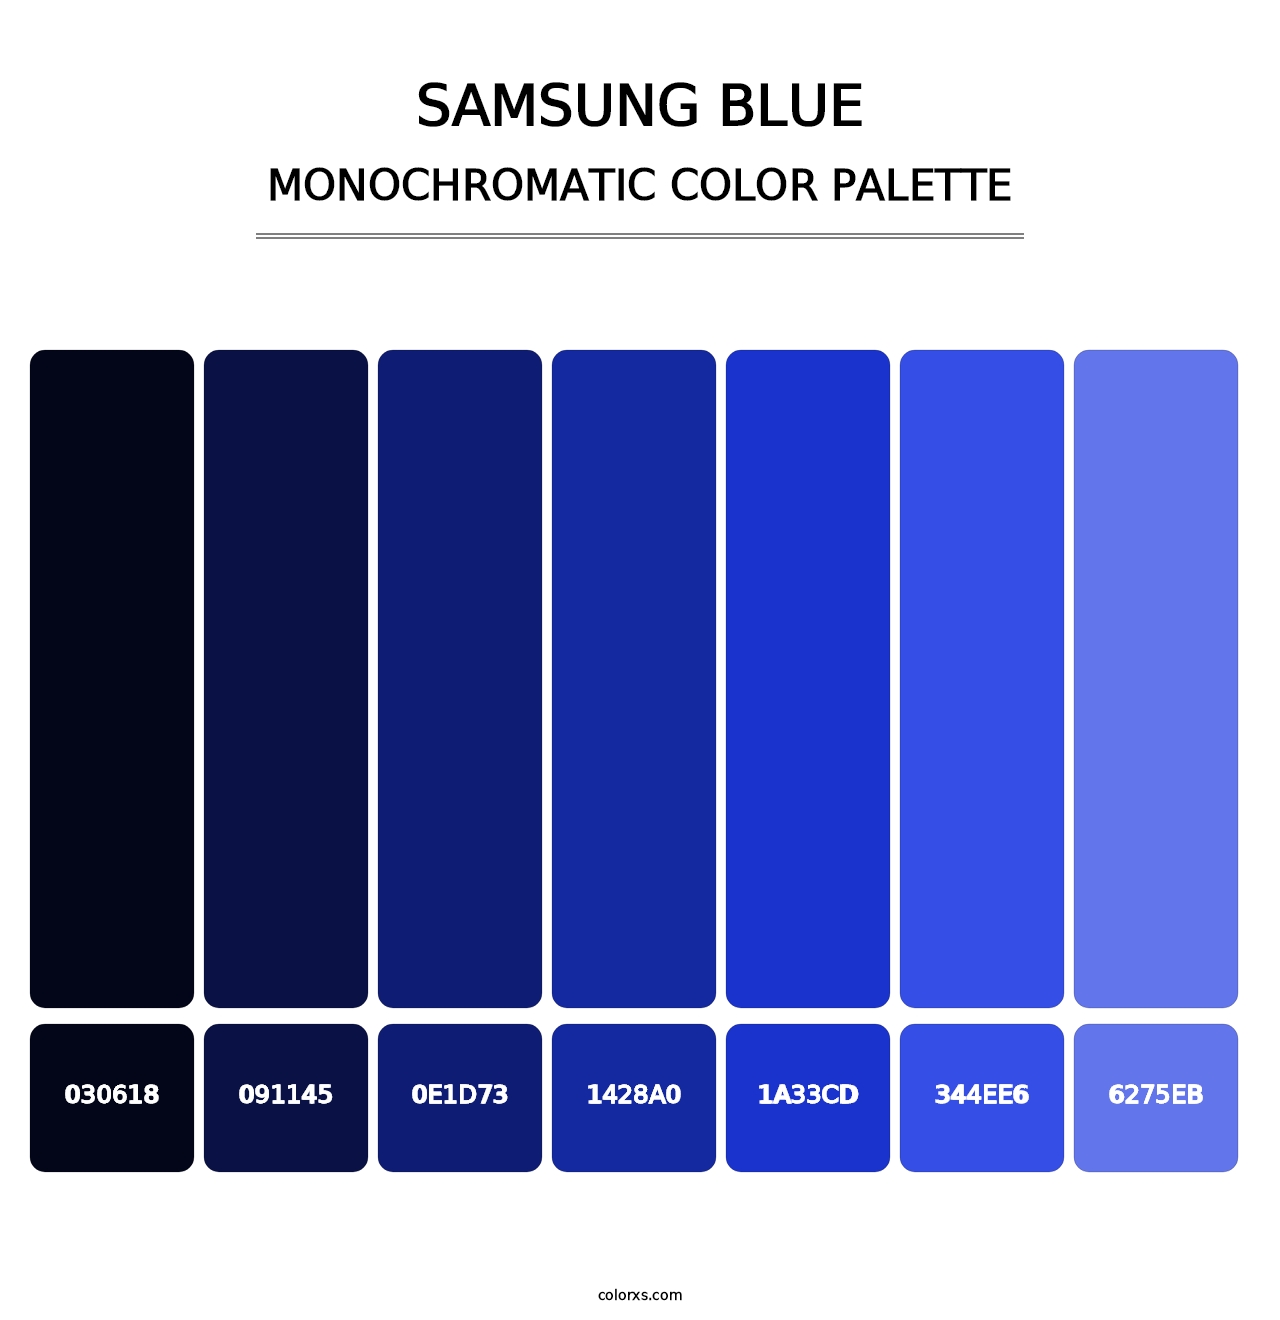 Samsung Blue - Monochromatic Color Palette